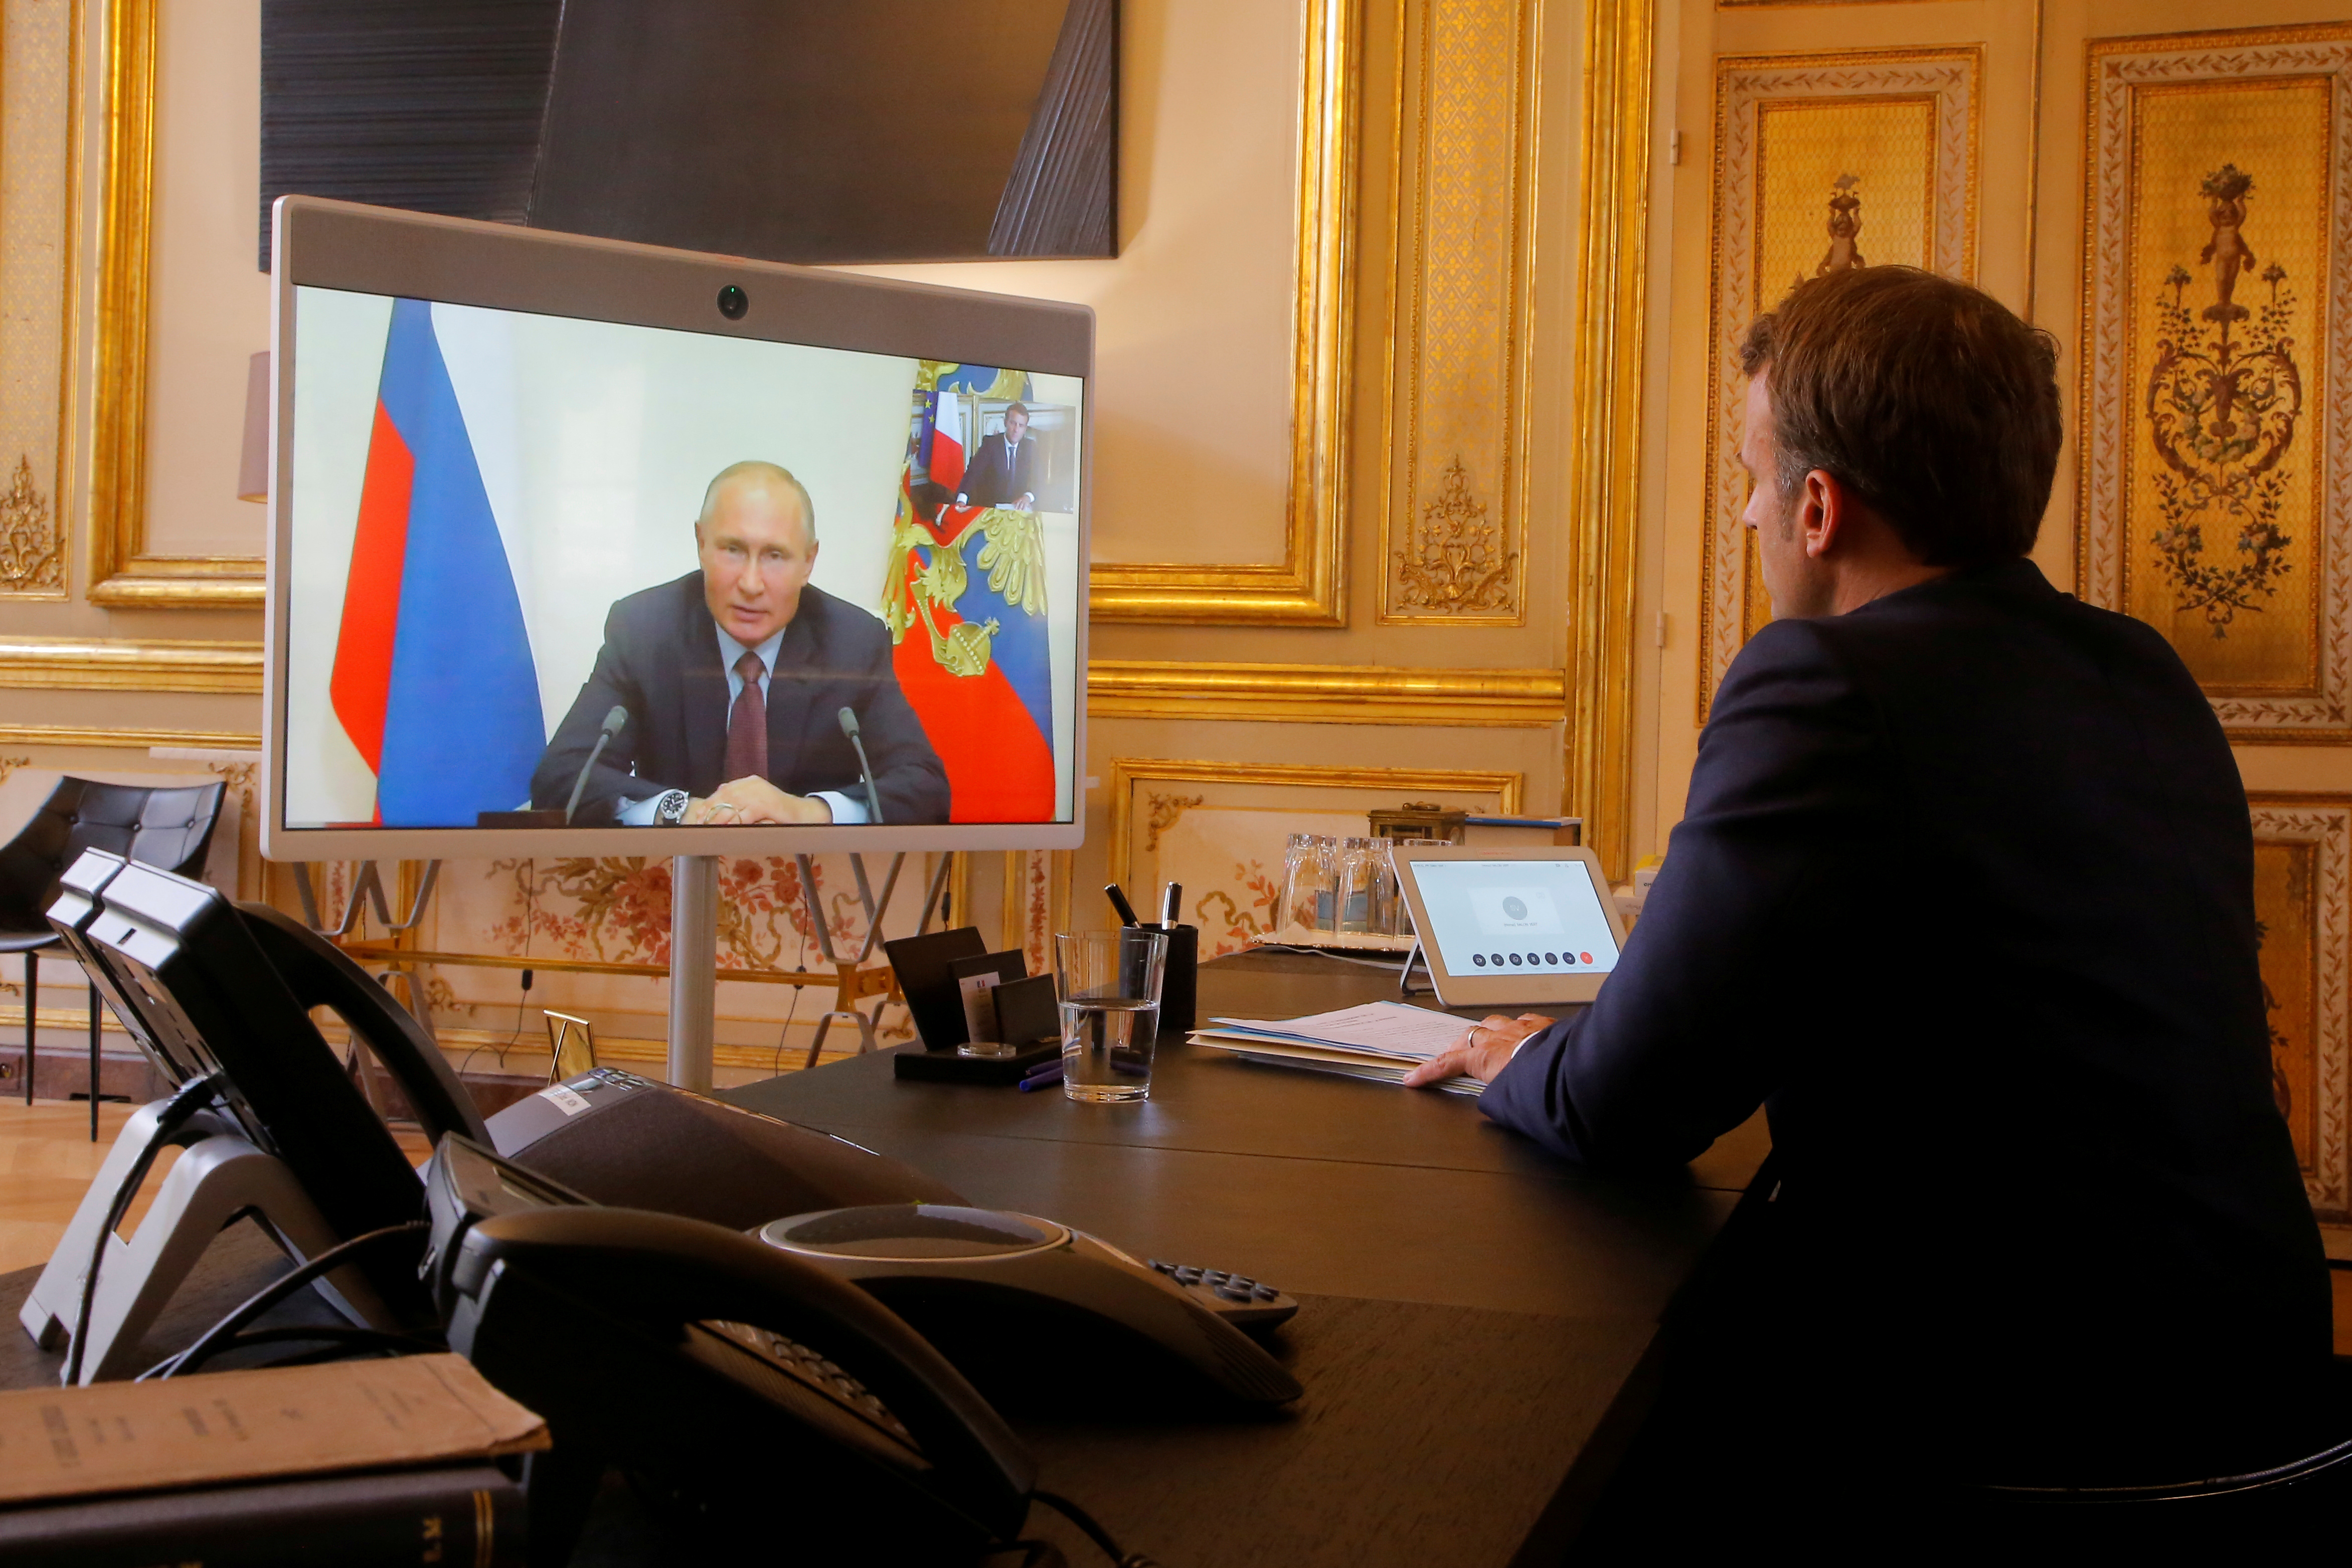 El presidente francés se reunirá próximamente con Vladimir Putin para ofrecerle básicamente una vía de desescalada”, declararon portavoces galos, precisando que el intercambio se produciría “en los próximos días“.